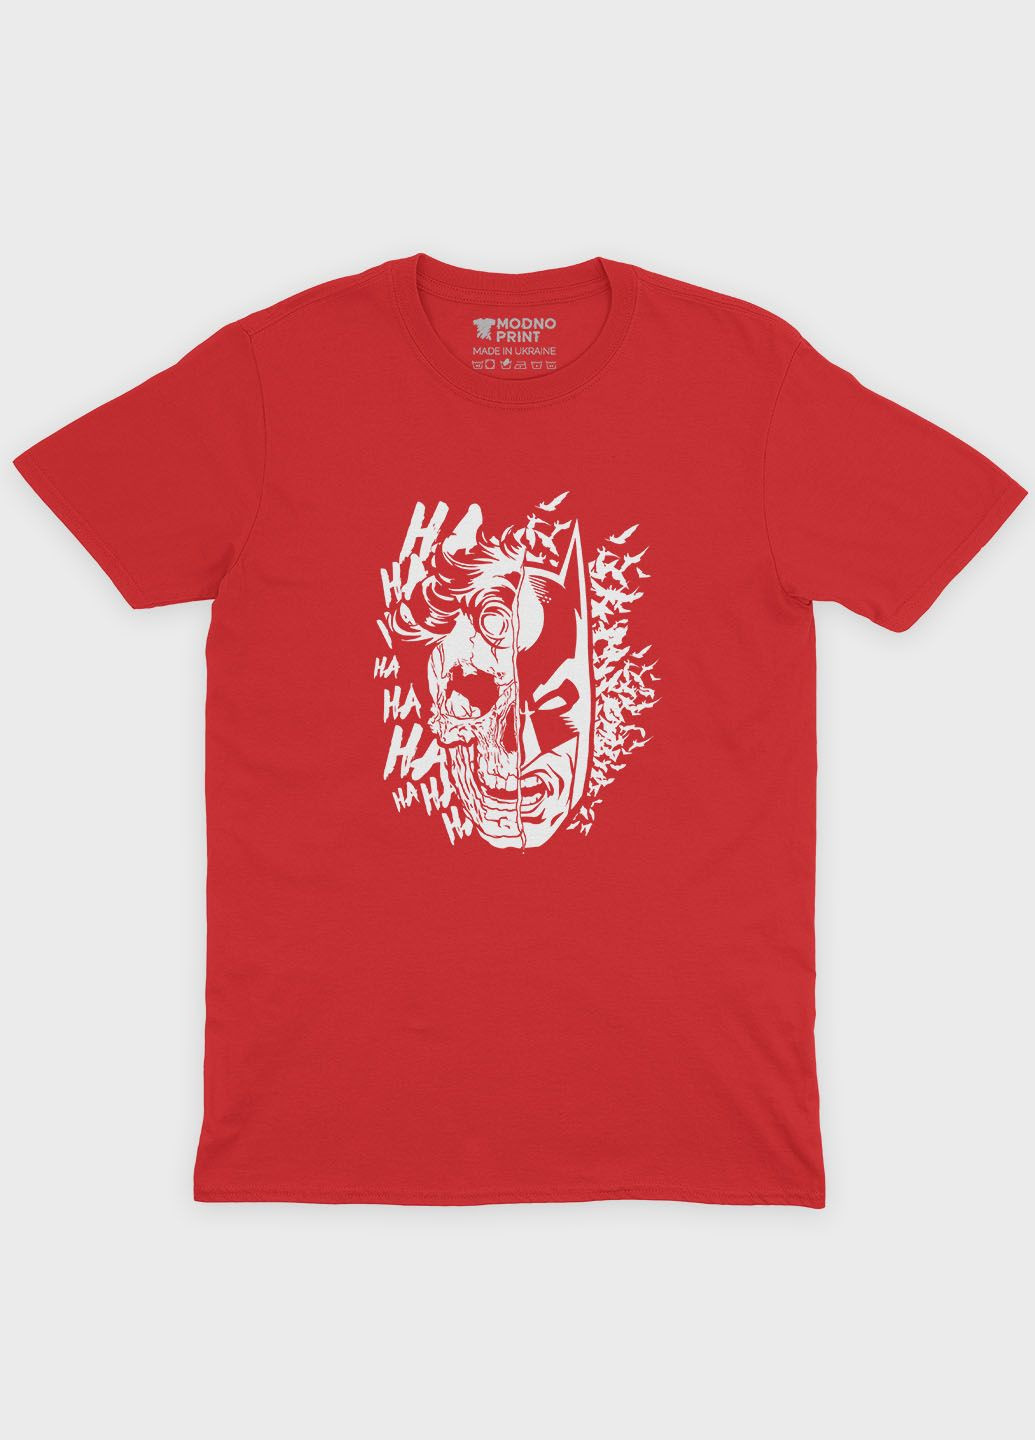 Червона демісезонна футболка для дівчинки з принтом суперзлодія - джокер (ts001-1-sre-006-005-014-g) Modno